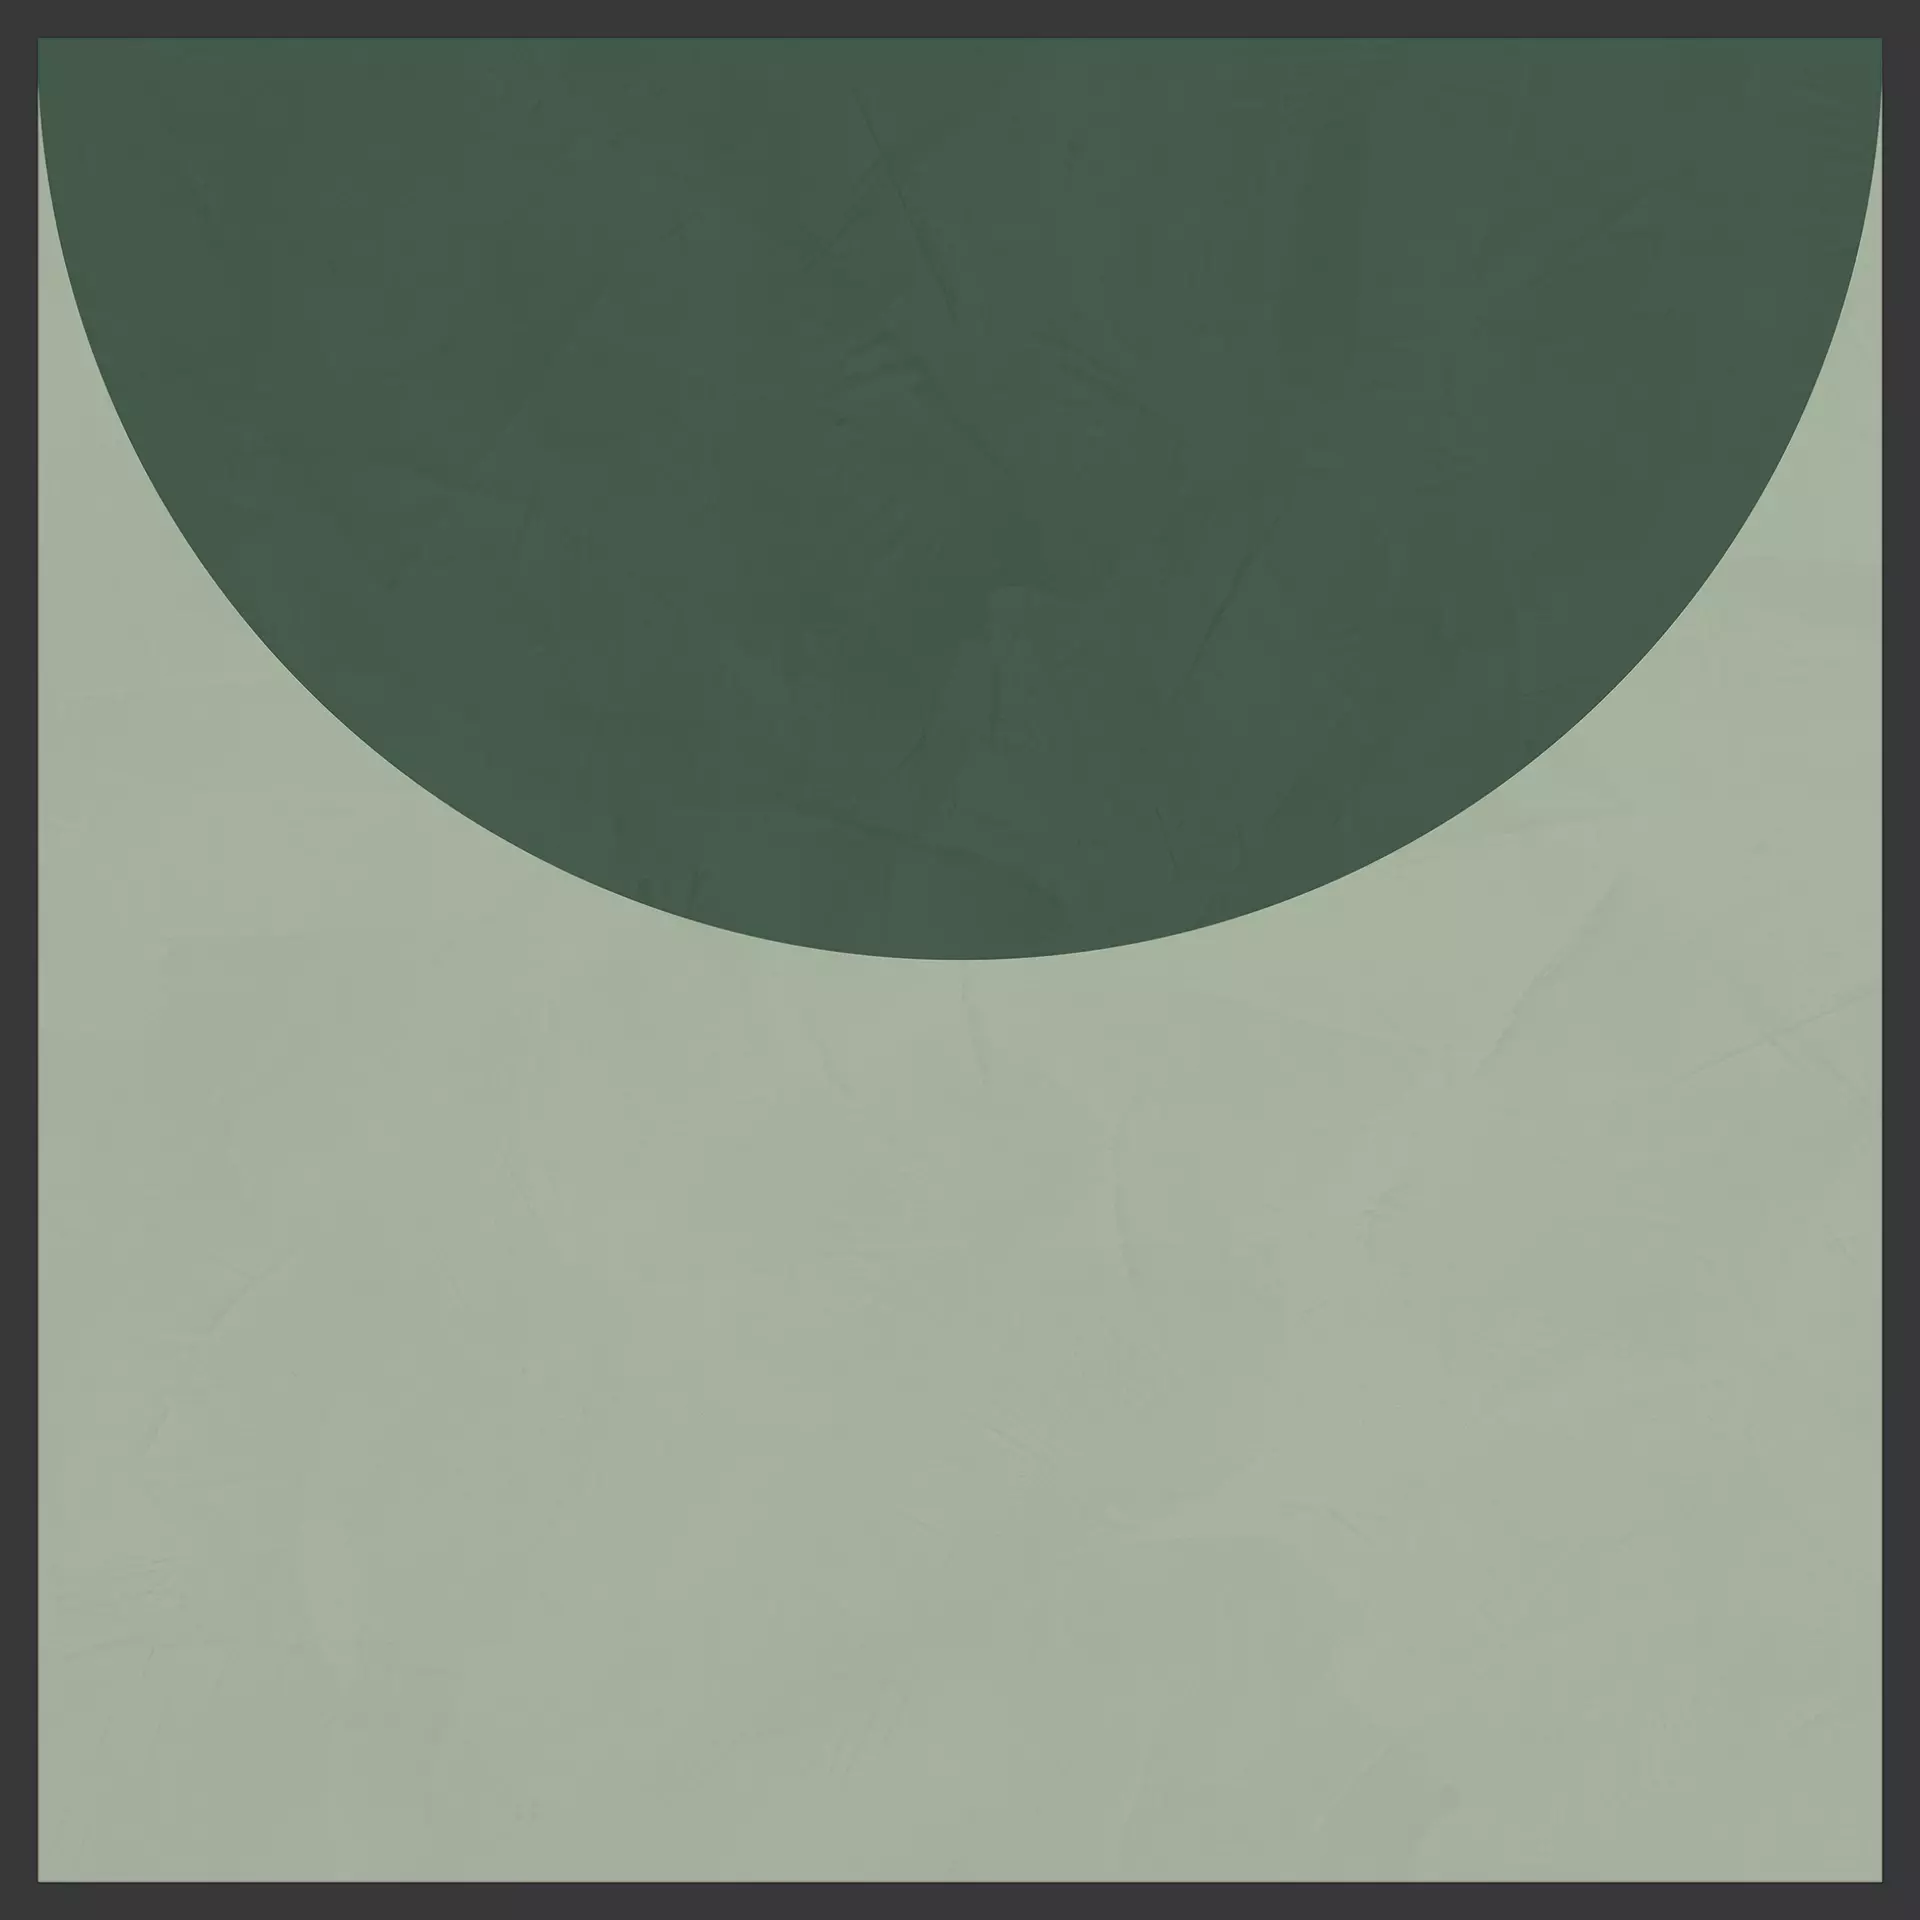 Cedit Policroma Lichene – Conifera Naturale – Matt Decor Volta 764136 120x120cm rectified 6mm